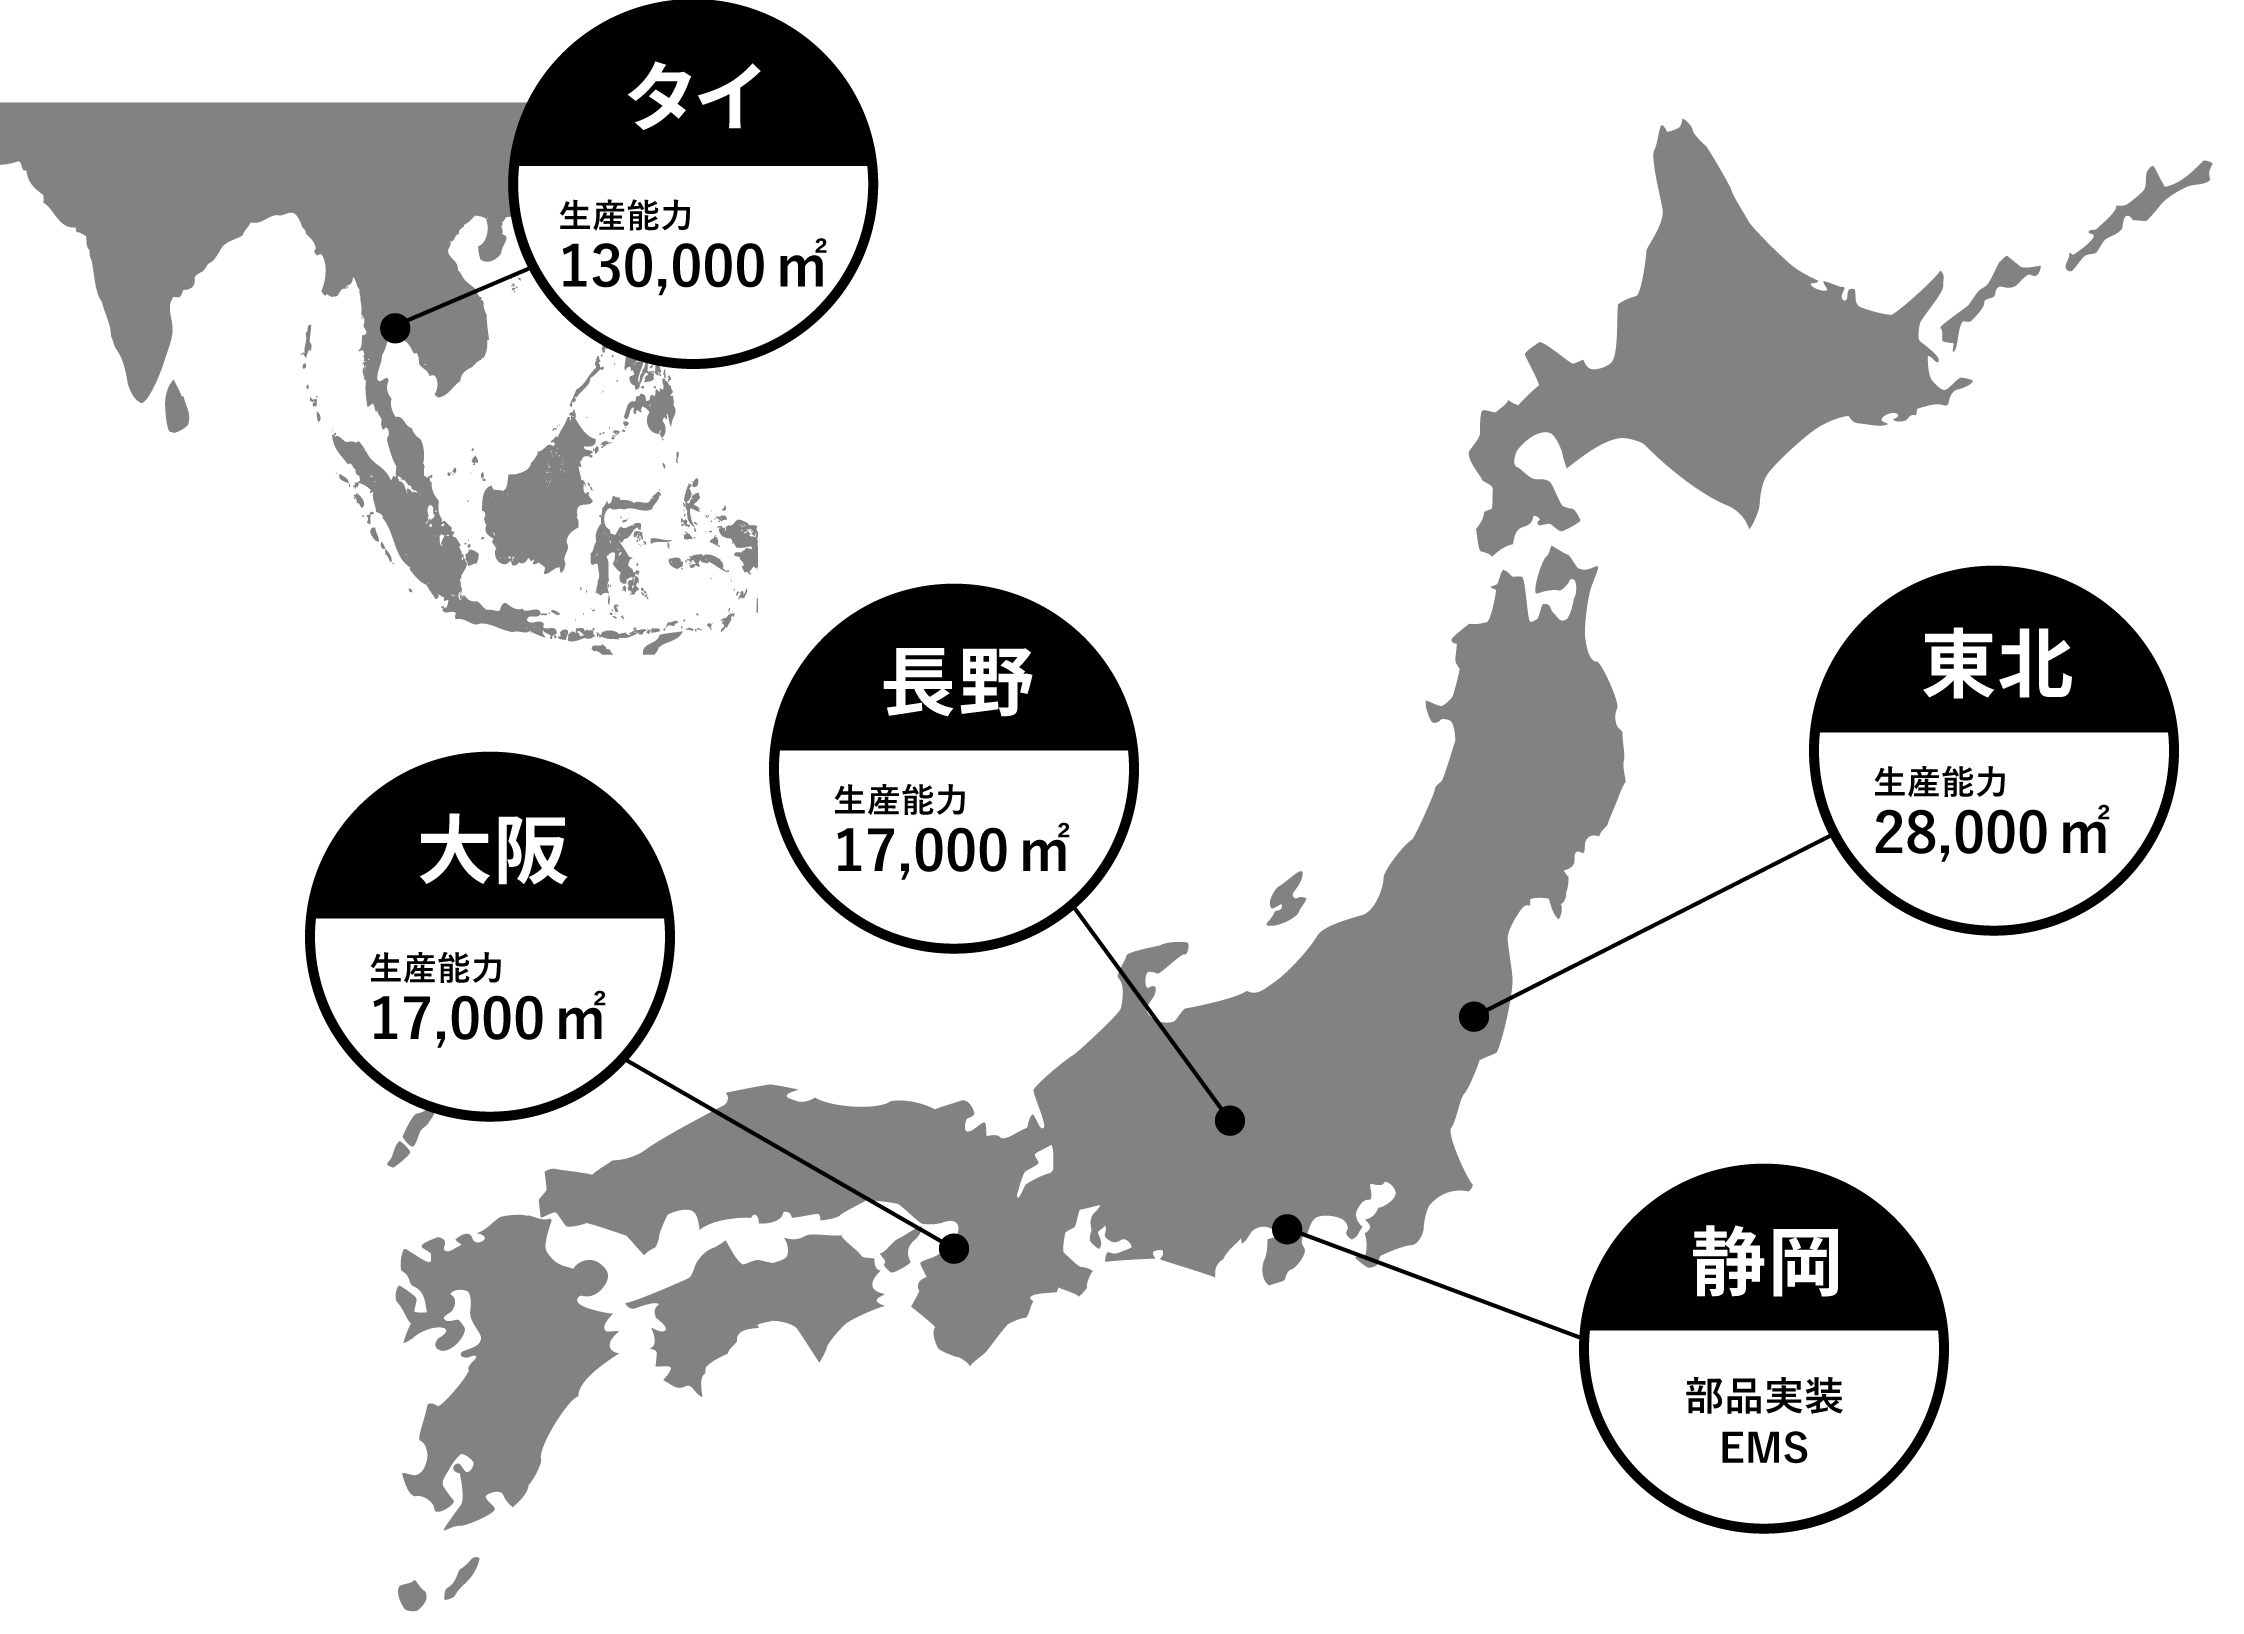 タイ生産能力130,000m²大阪生産能力17,000m²長野生産能力17,000m²東北生産能力28,000m²静岡板金、射出成形最終製品組立